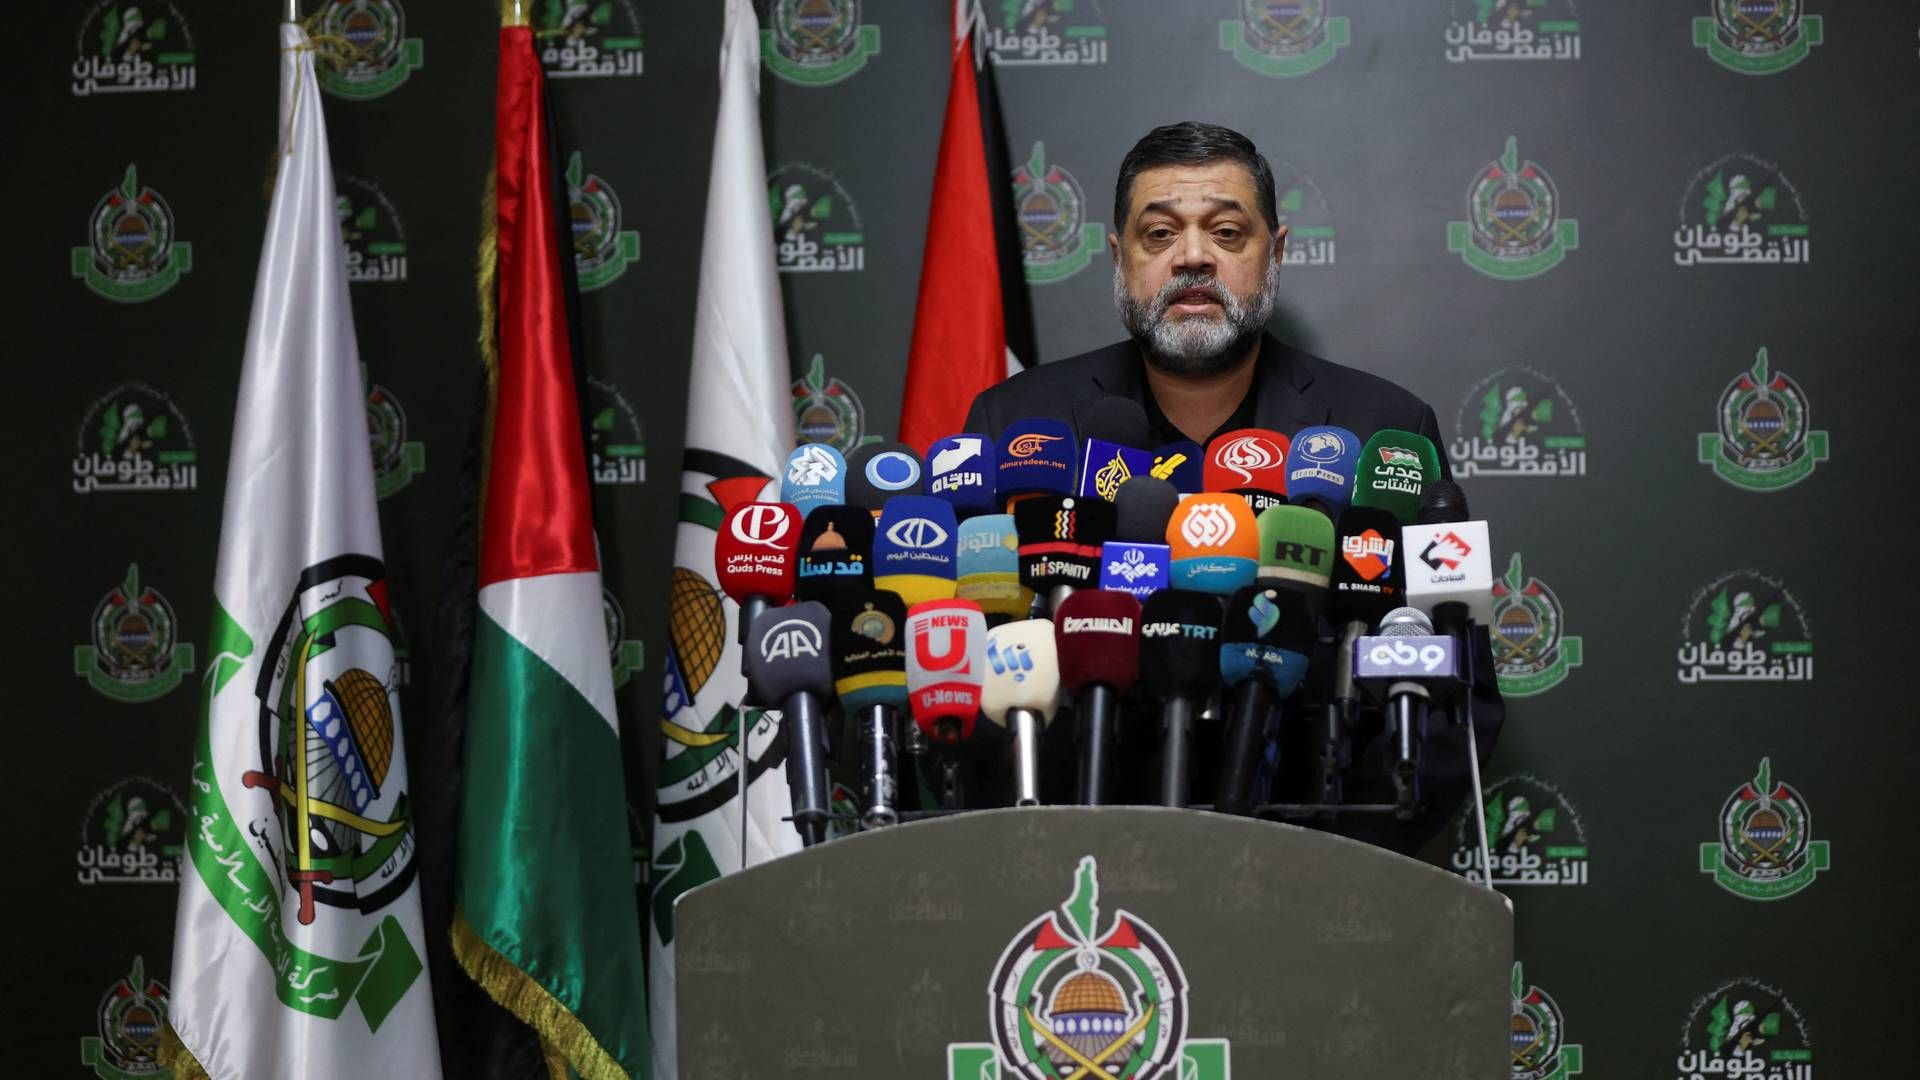 Osama Hamdan er international talsmand for Hamas, og han blev for nogle dage siden interviewet af Rasmus Tantholdt fra TV 2, og i interviewet rettede han en tak til demonstranterne til de danske Palæstina-demonstrationer, som flere fagforeninger har bakket op om. | Foto: Mohamed Azakir/Reuters/Ritzau Scanpix